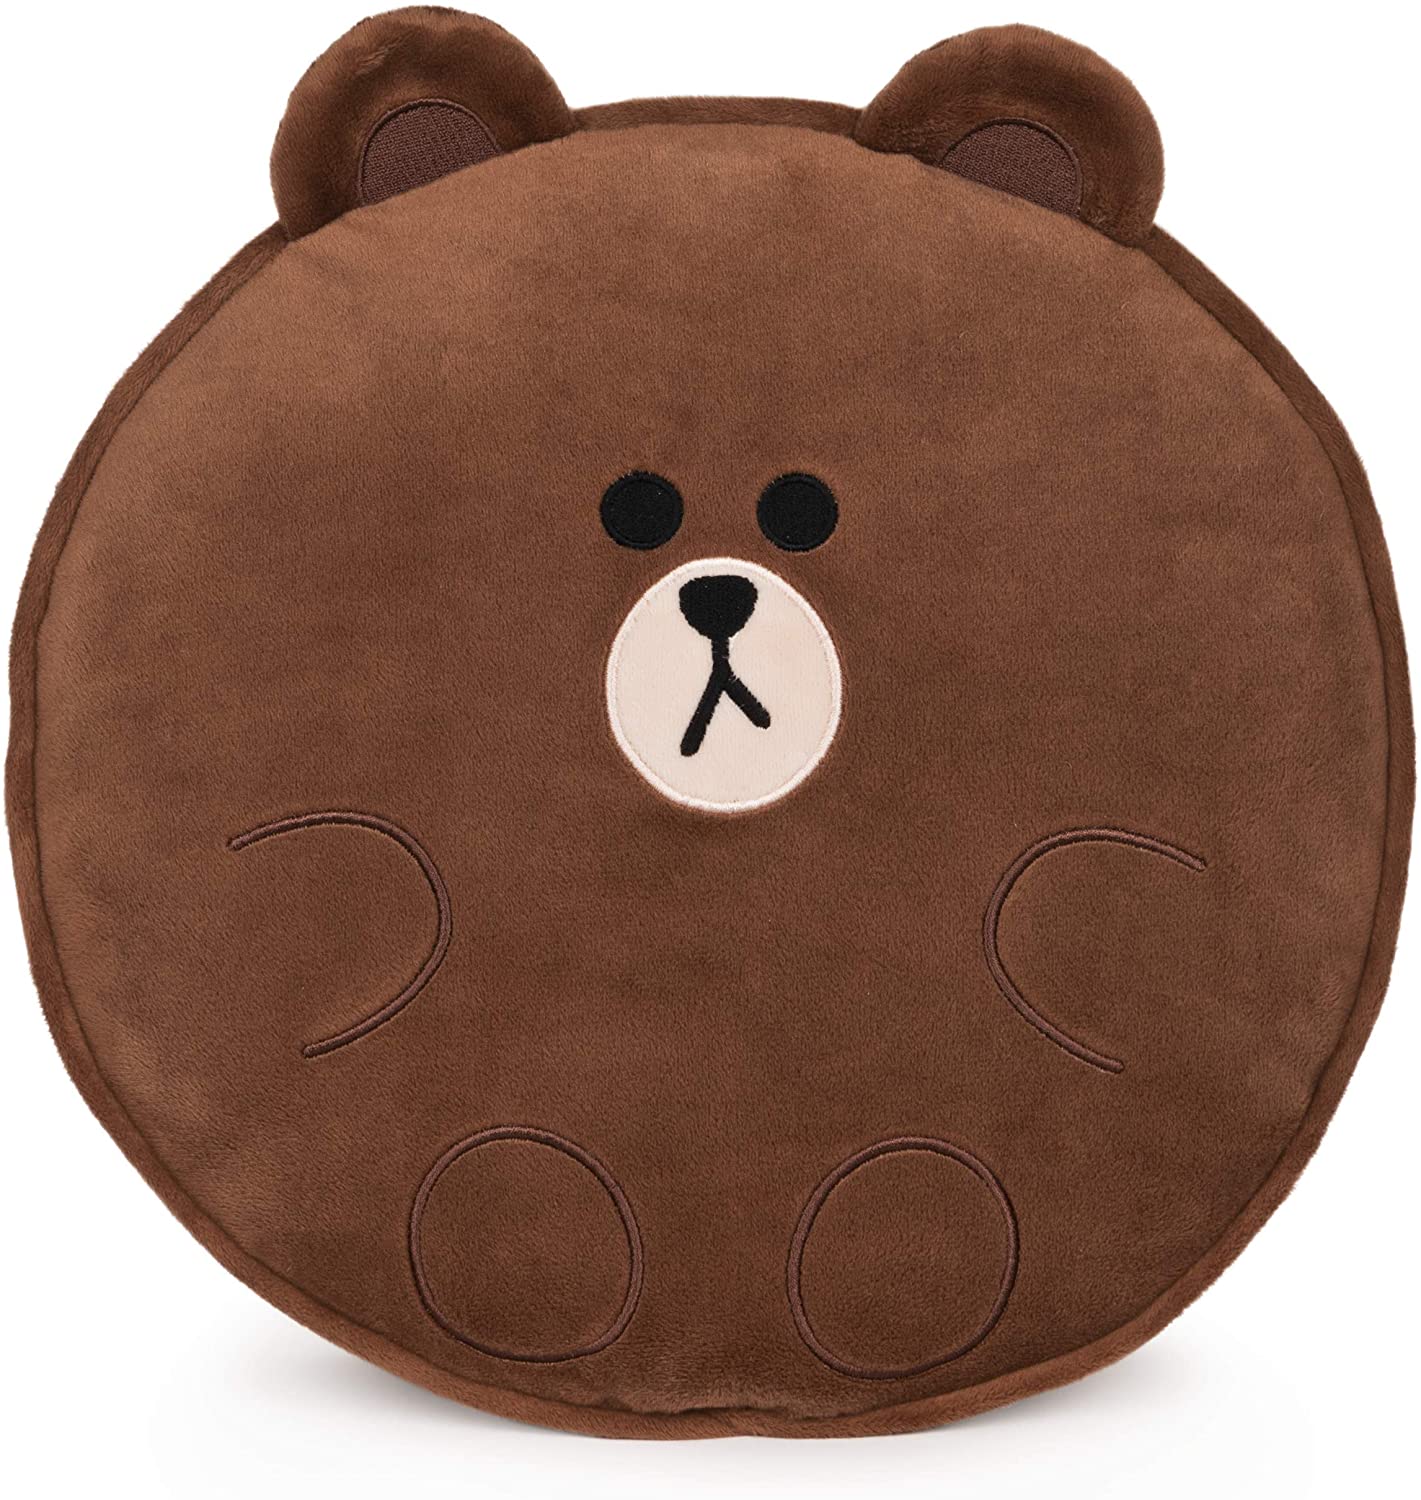 Gund Line Friends Brown Bear Pillow 12"